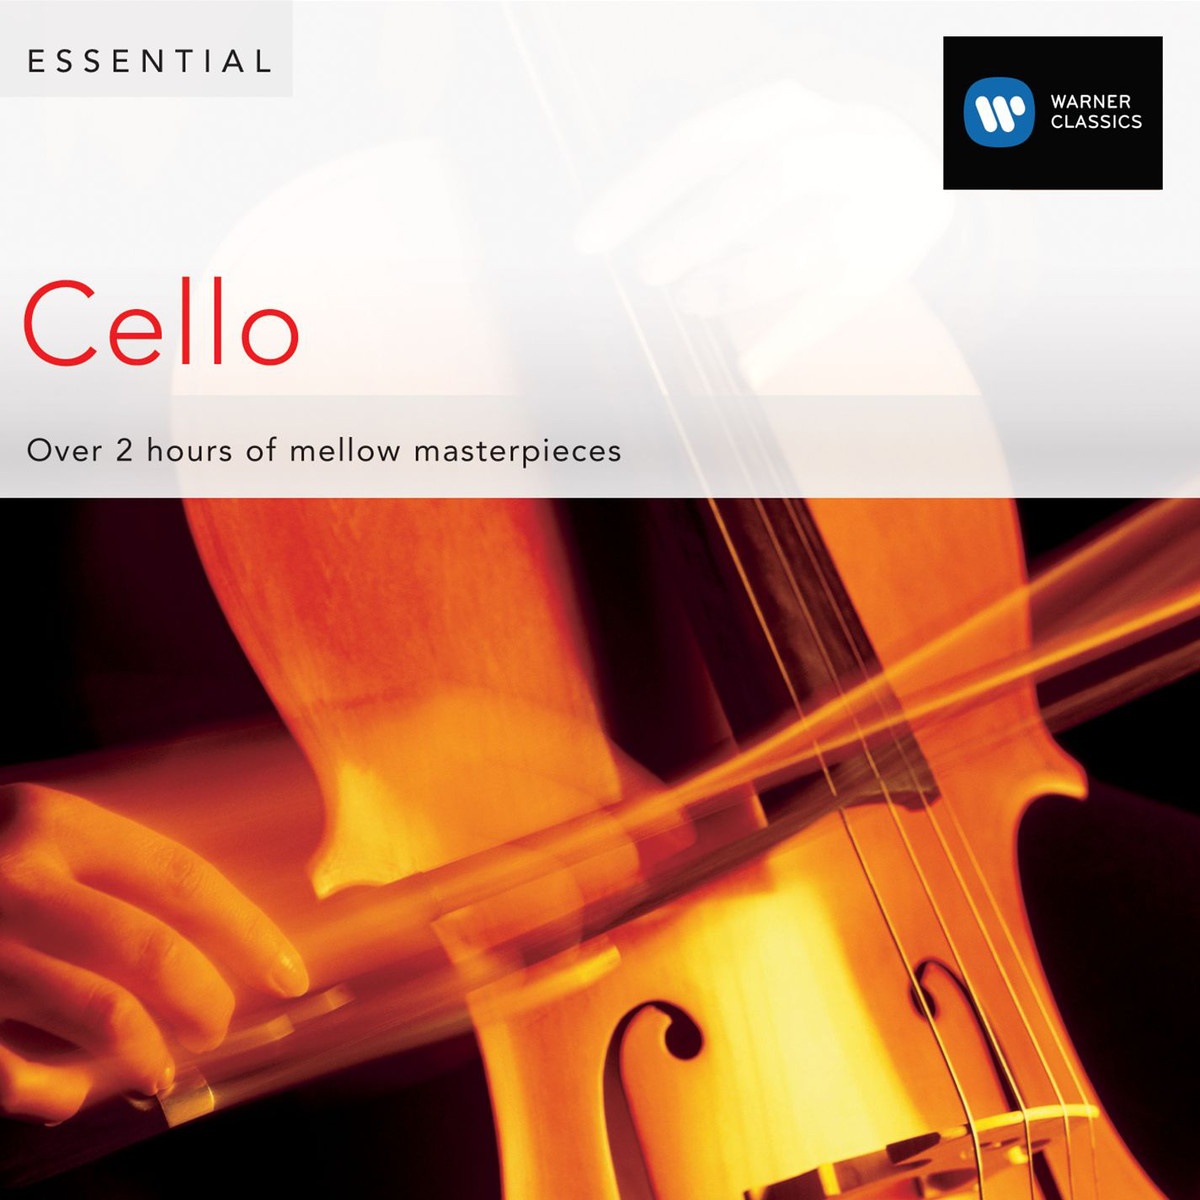 6 Suites (Sonatas) for Cello BWV1007-12, Suite No.1 in G major, BWV1007: Allemande